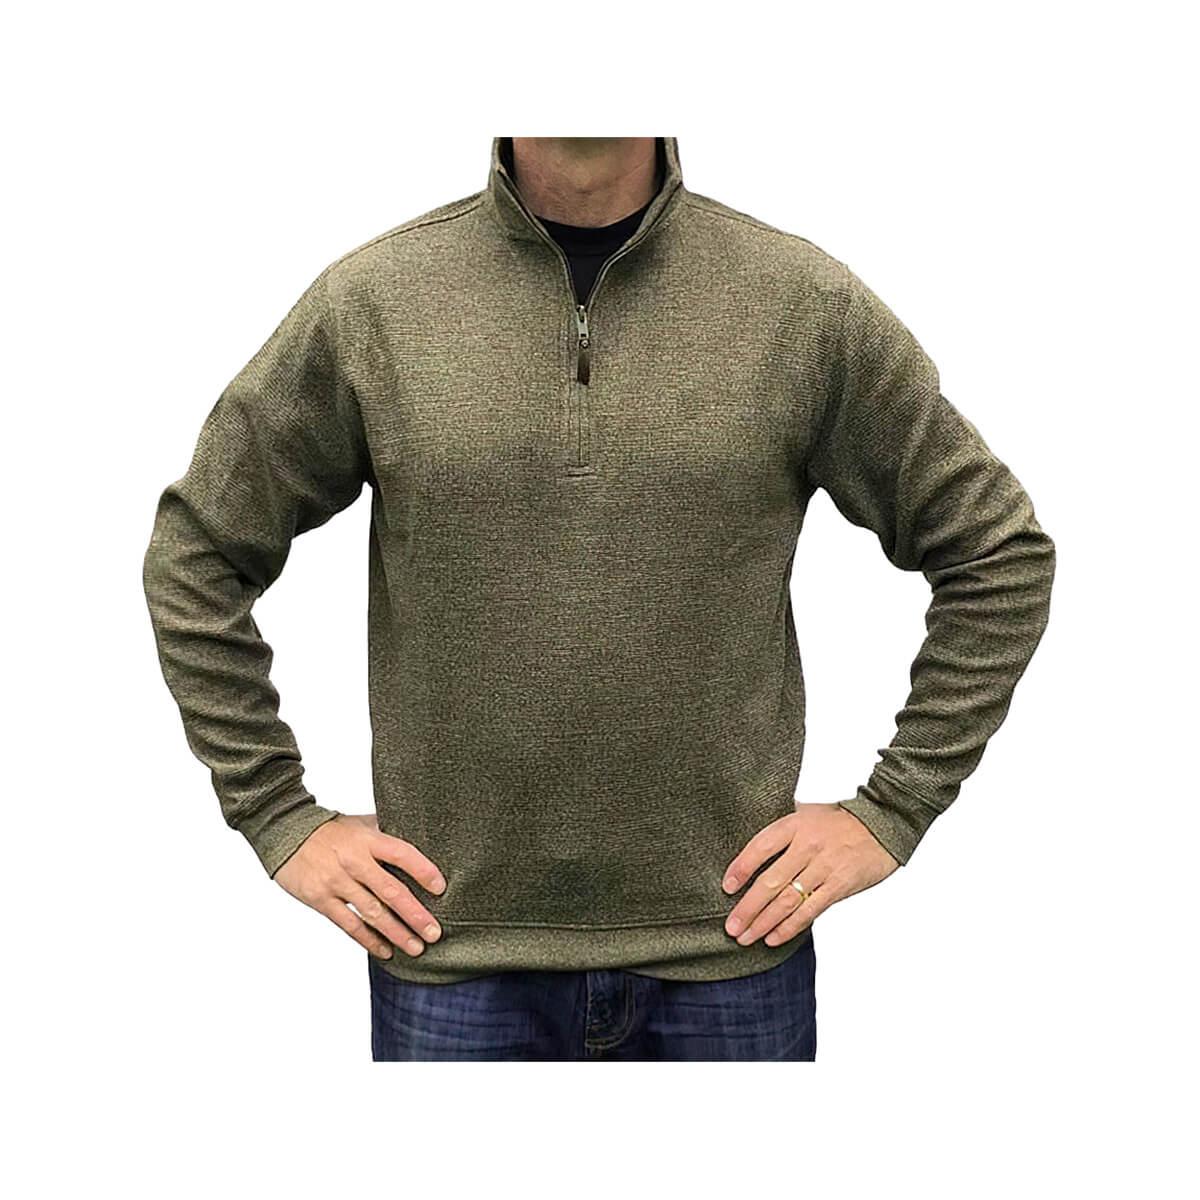  Men's Mortimer Half Zip Pullover Sweater